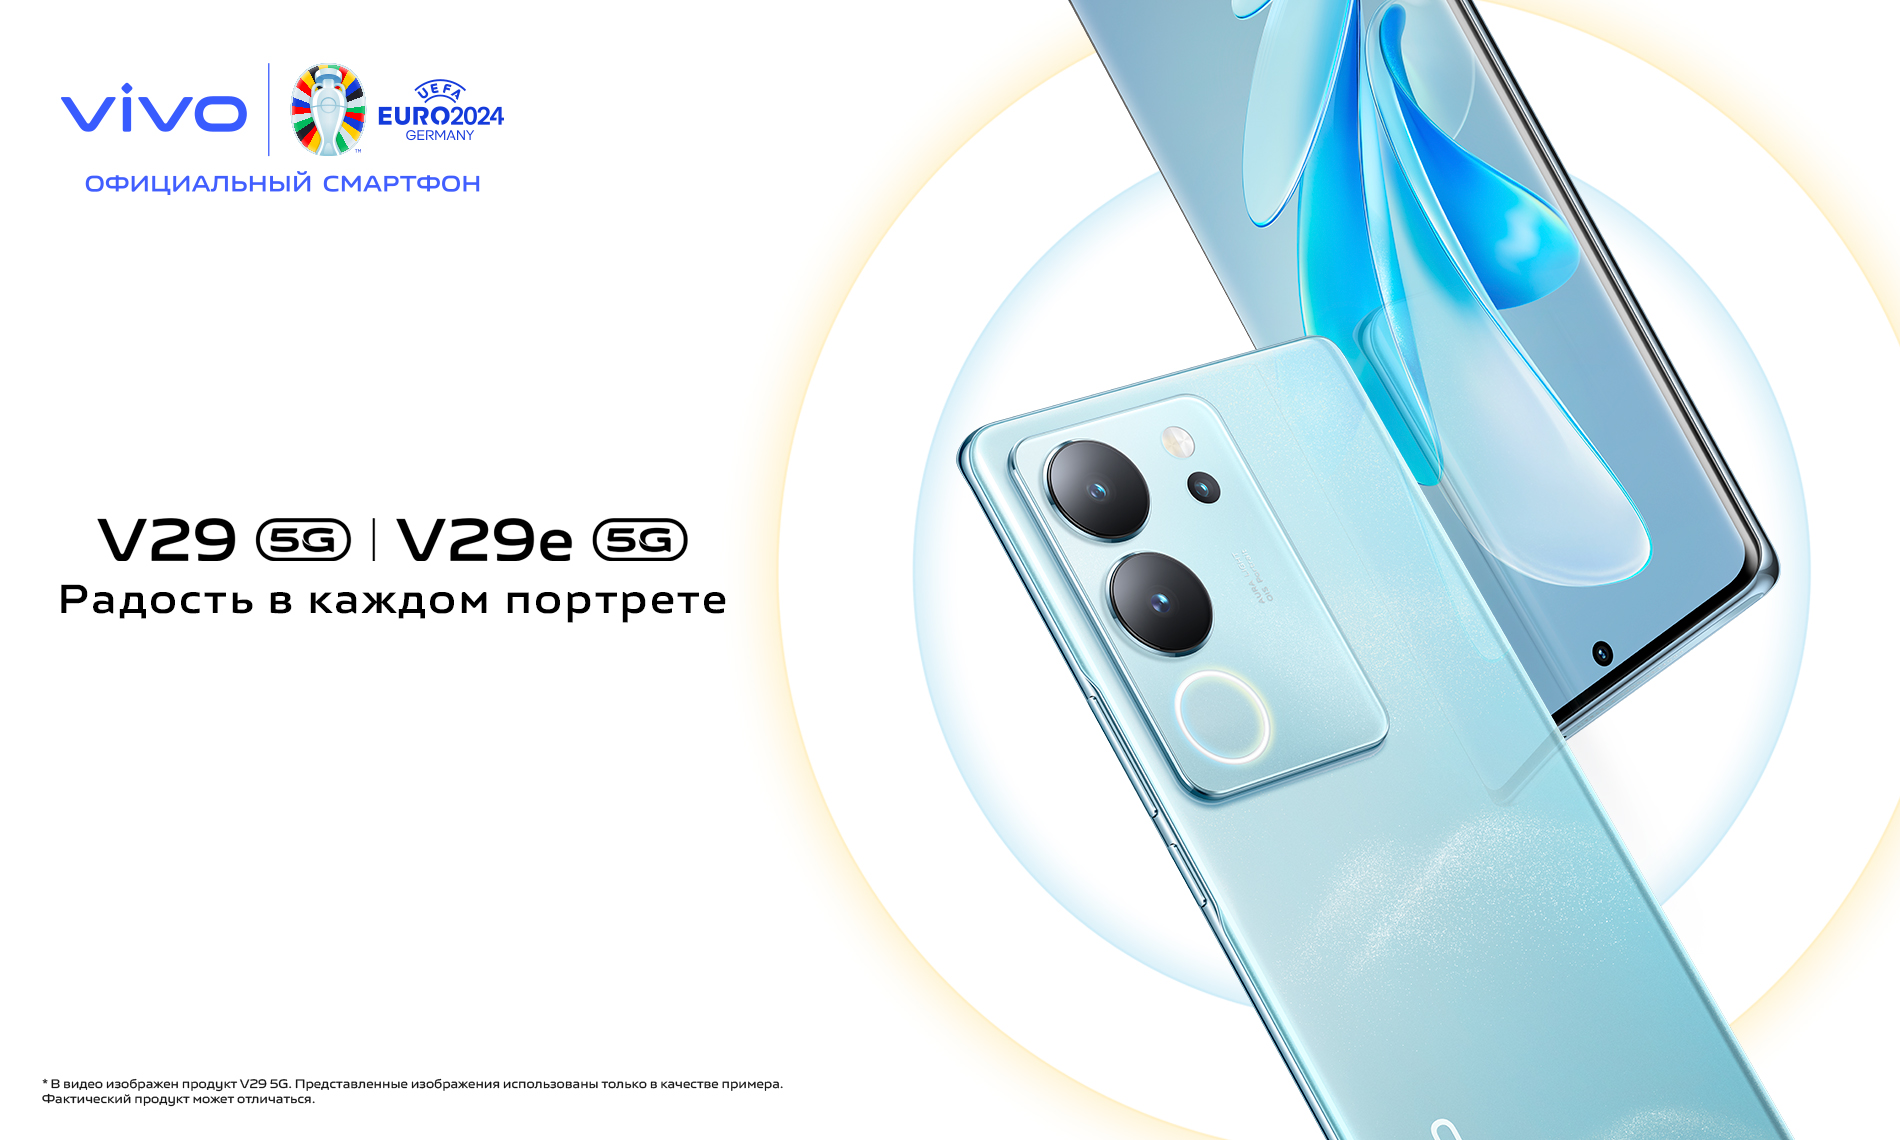 vivo запускает V29 5G в Казахстане, демонстрируя интеллектуальную световую подсветку Aura Light и ультрасовременный эстетичный дизайн